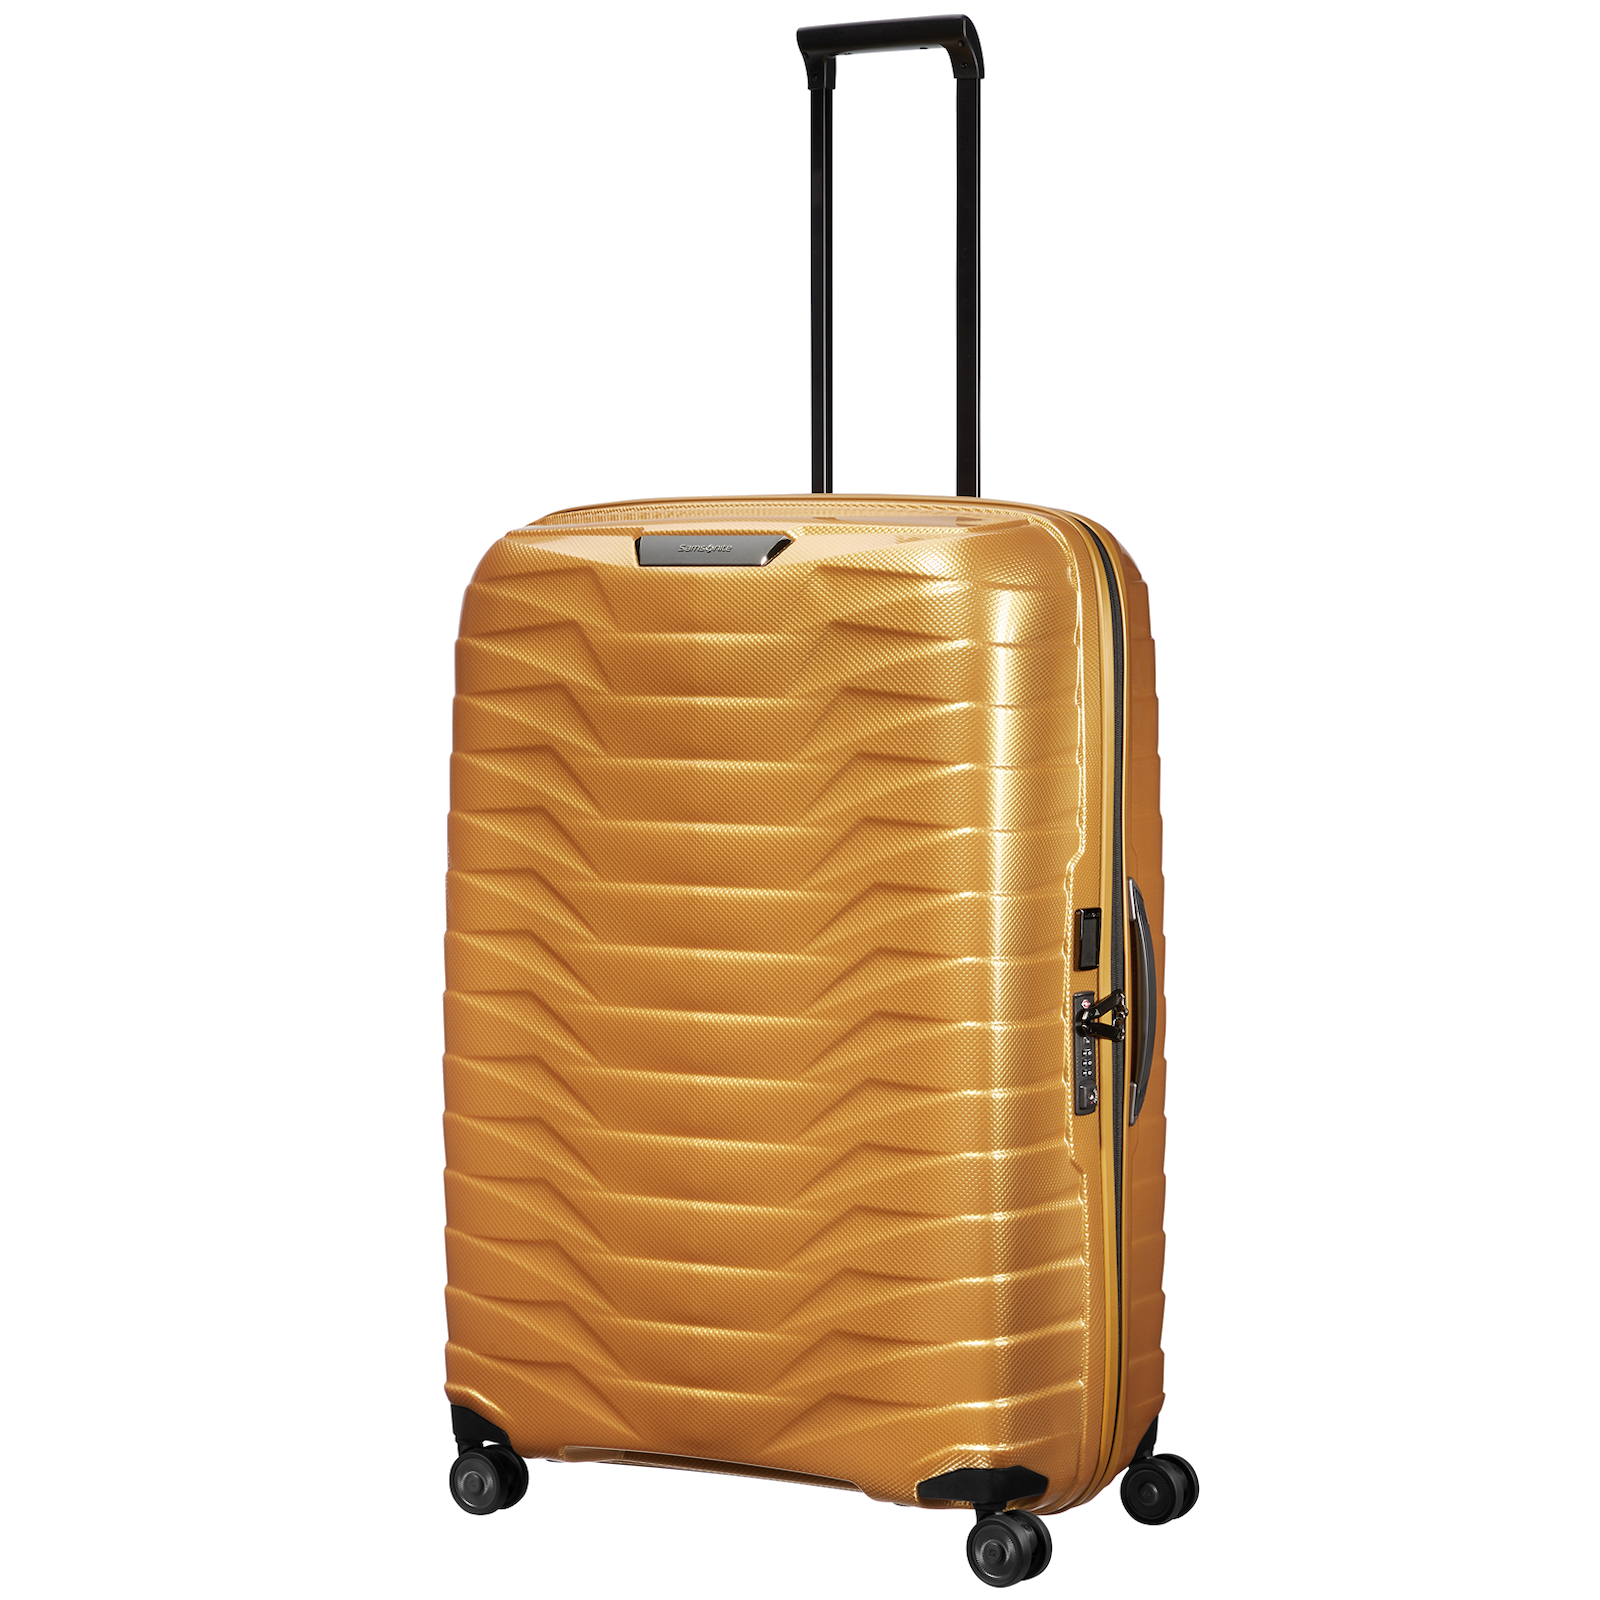 
Samsonite Proxis 4 Wheel 81cm Suitcase Honey Gold